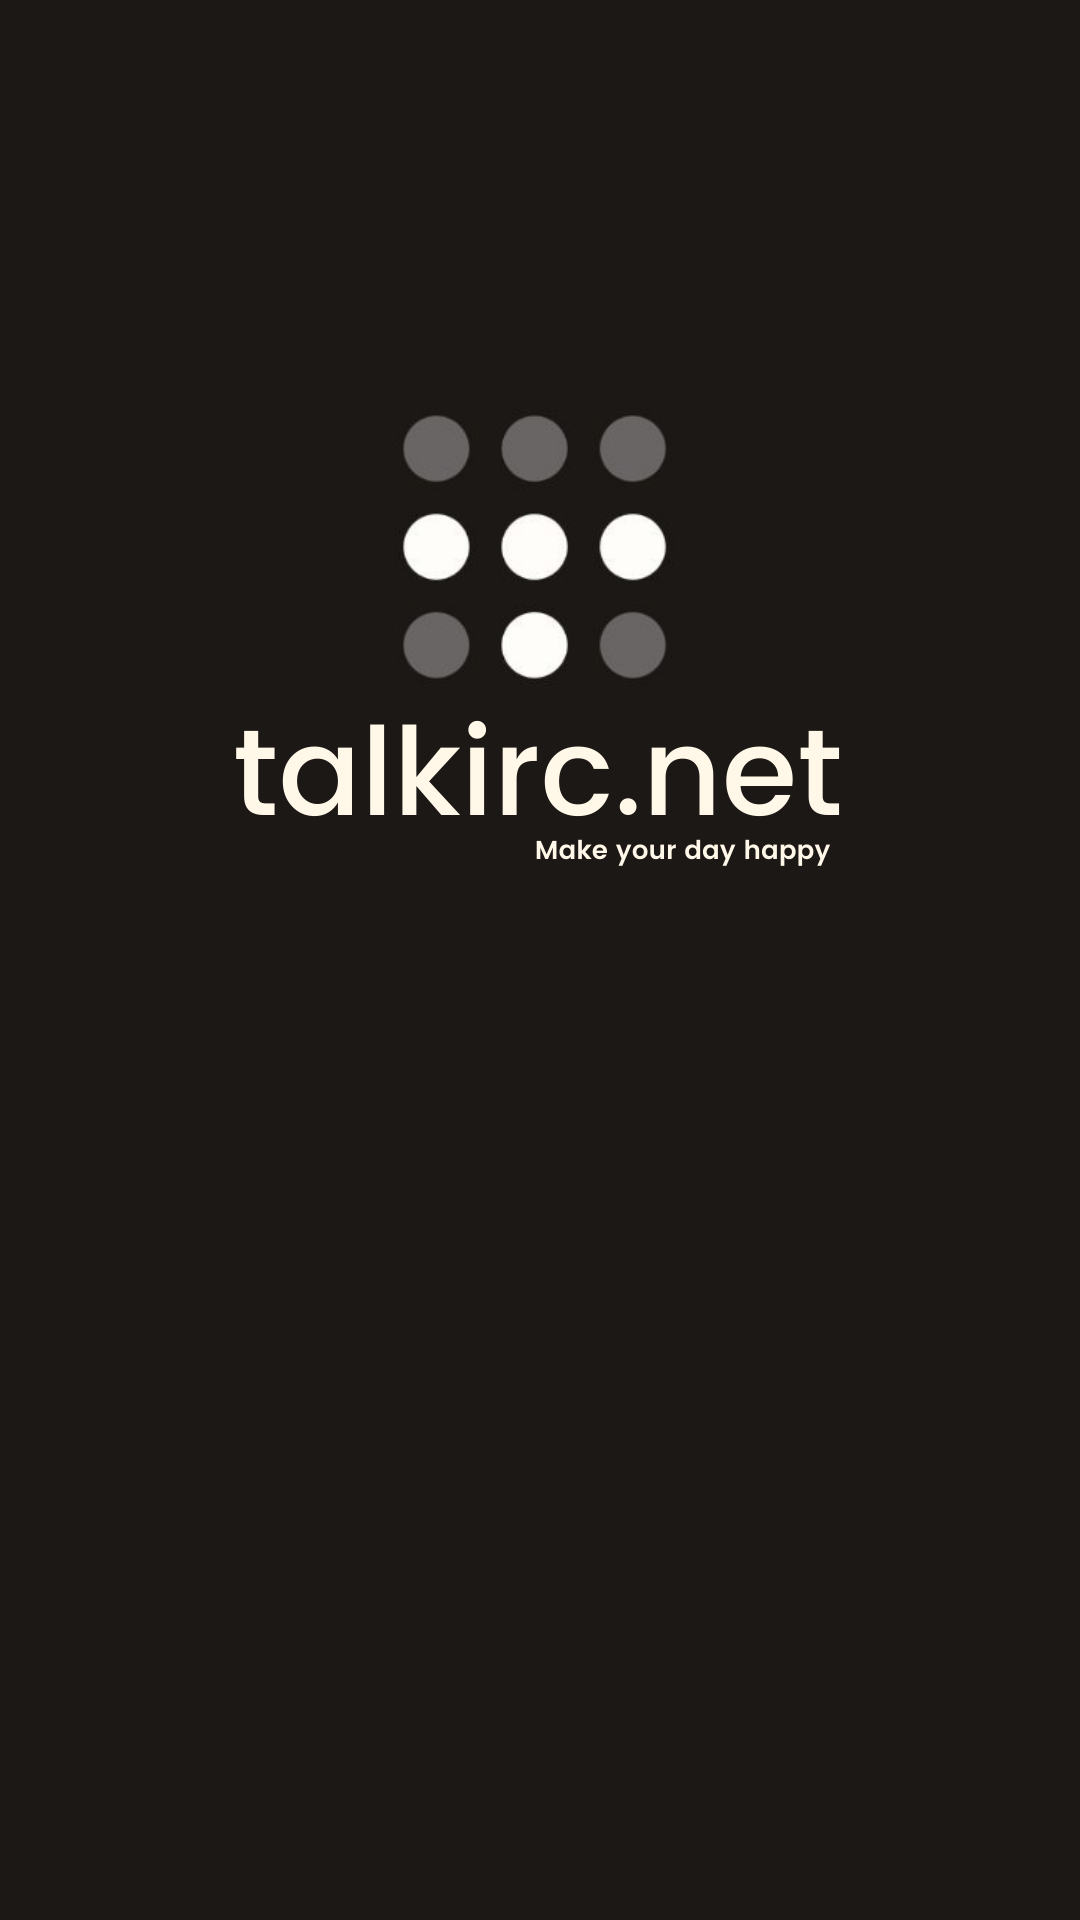 TalkIRCnet Mobile APK